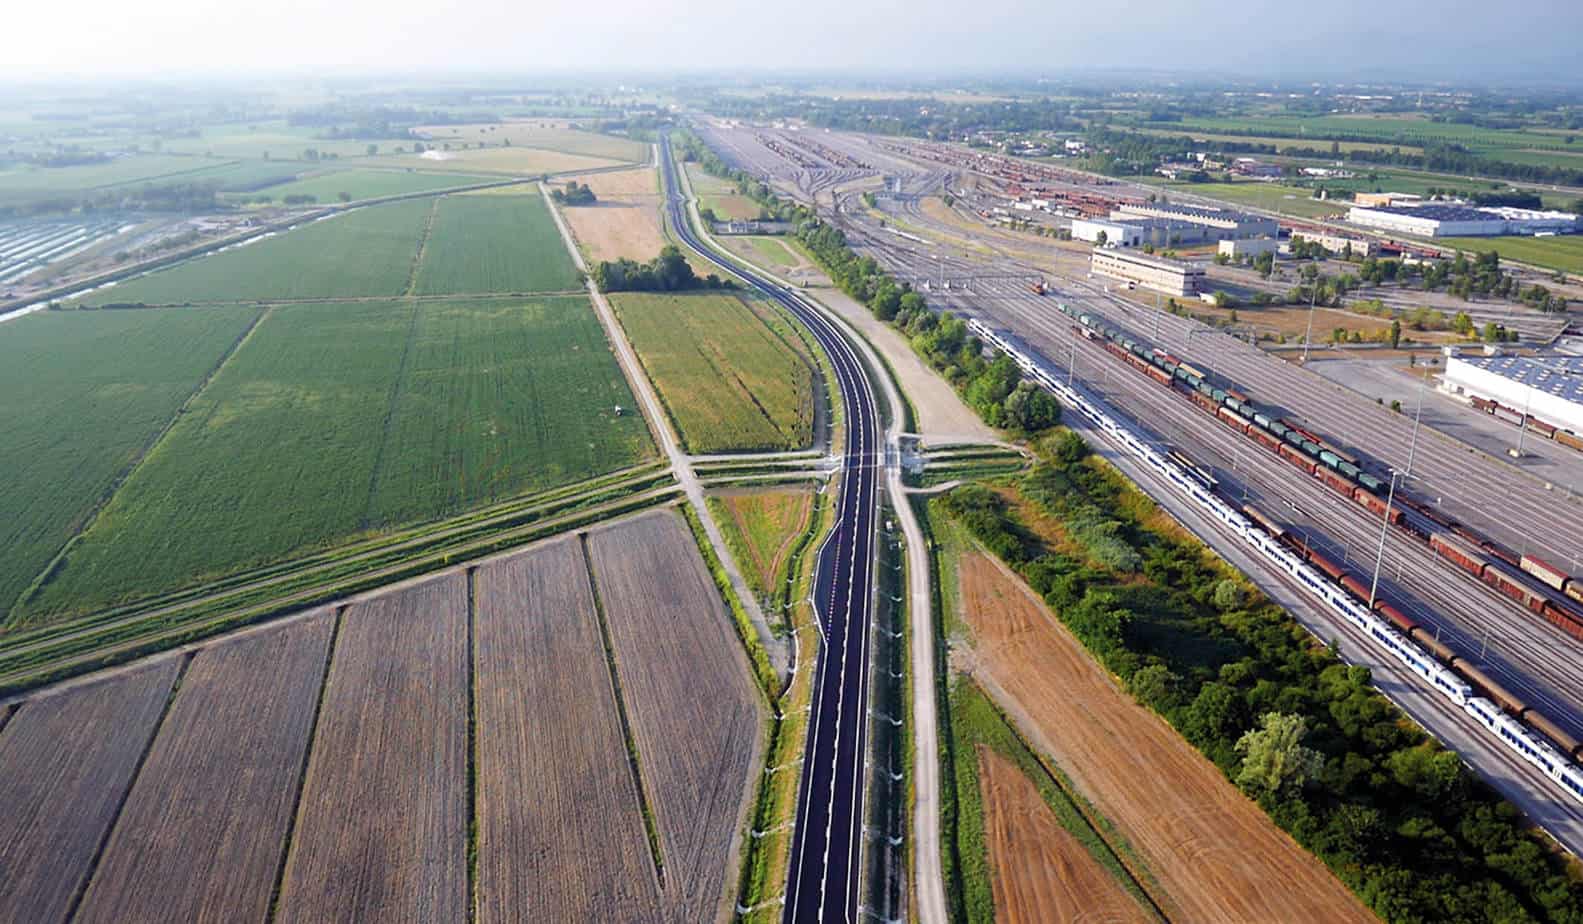 L’immagine dell’arteria stradale in prossimità dell’interporto ferroviario di Cervignano. In primo piano, un ponte delle opere minori su canale consortile